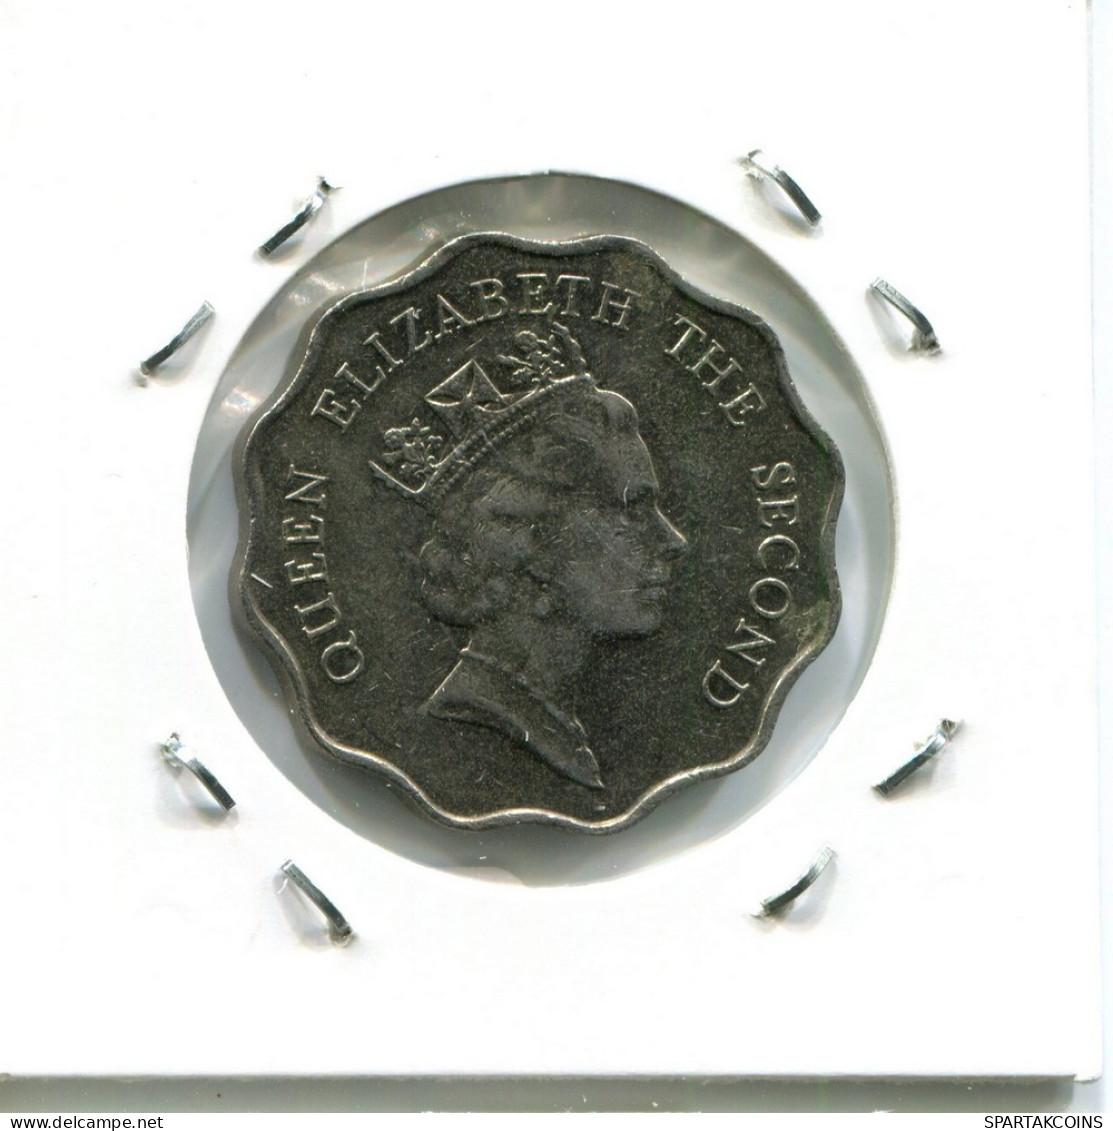 2 DOLLARS 1989 HONG KONG Coin #AY578.U.A - Hongkong